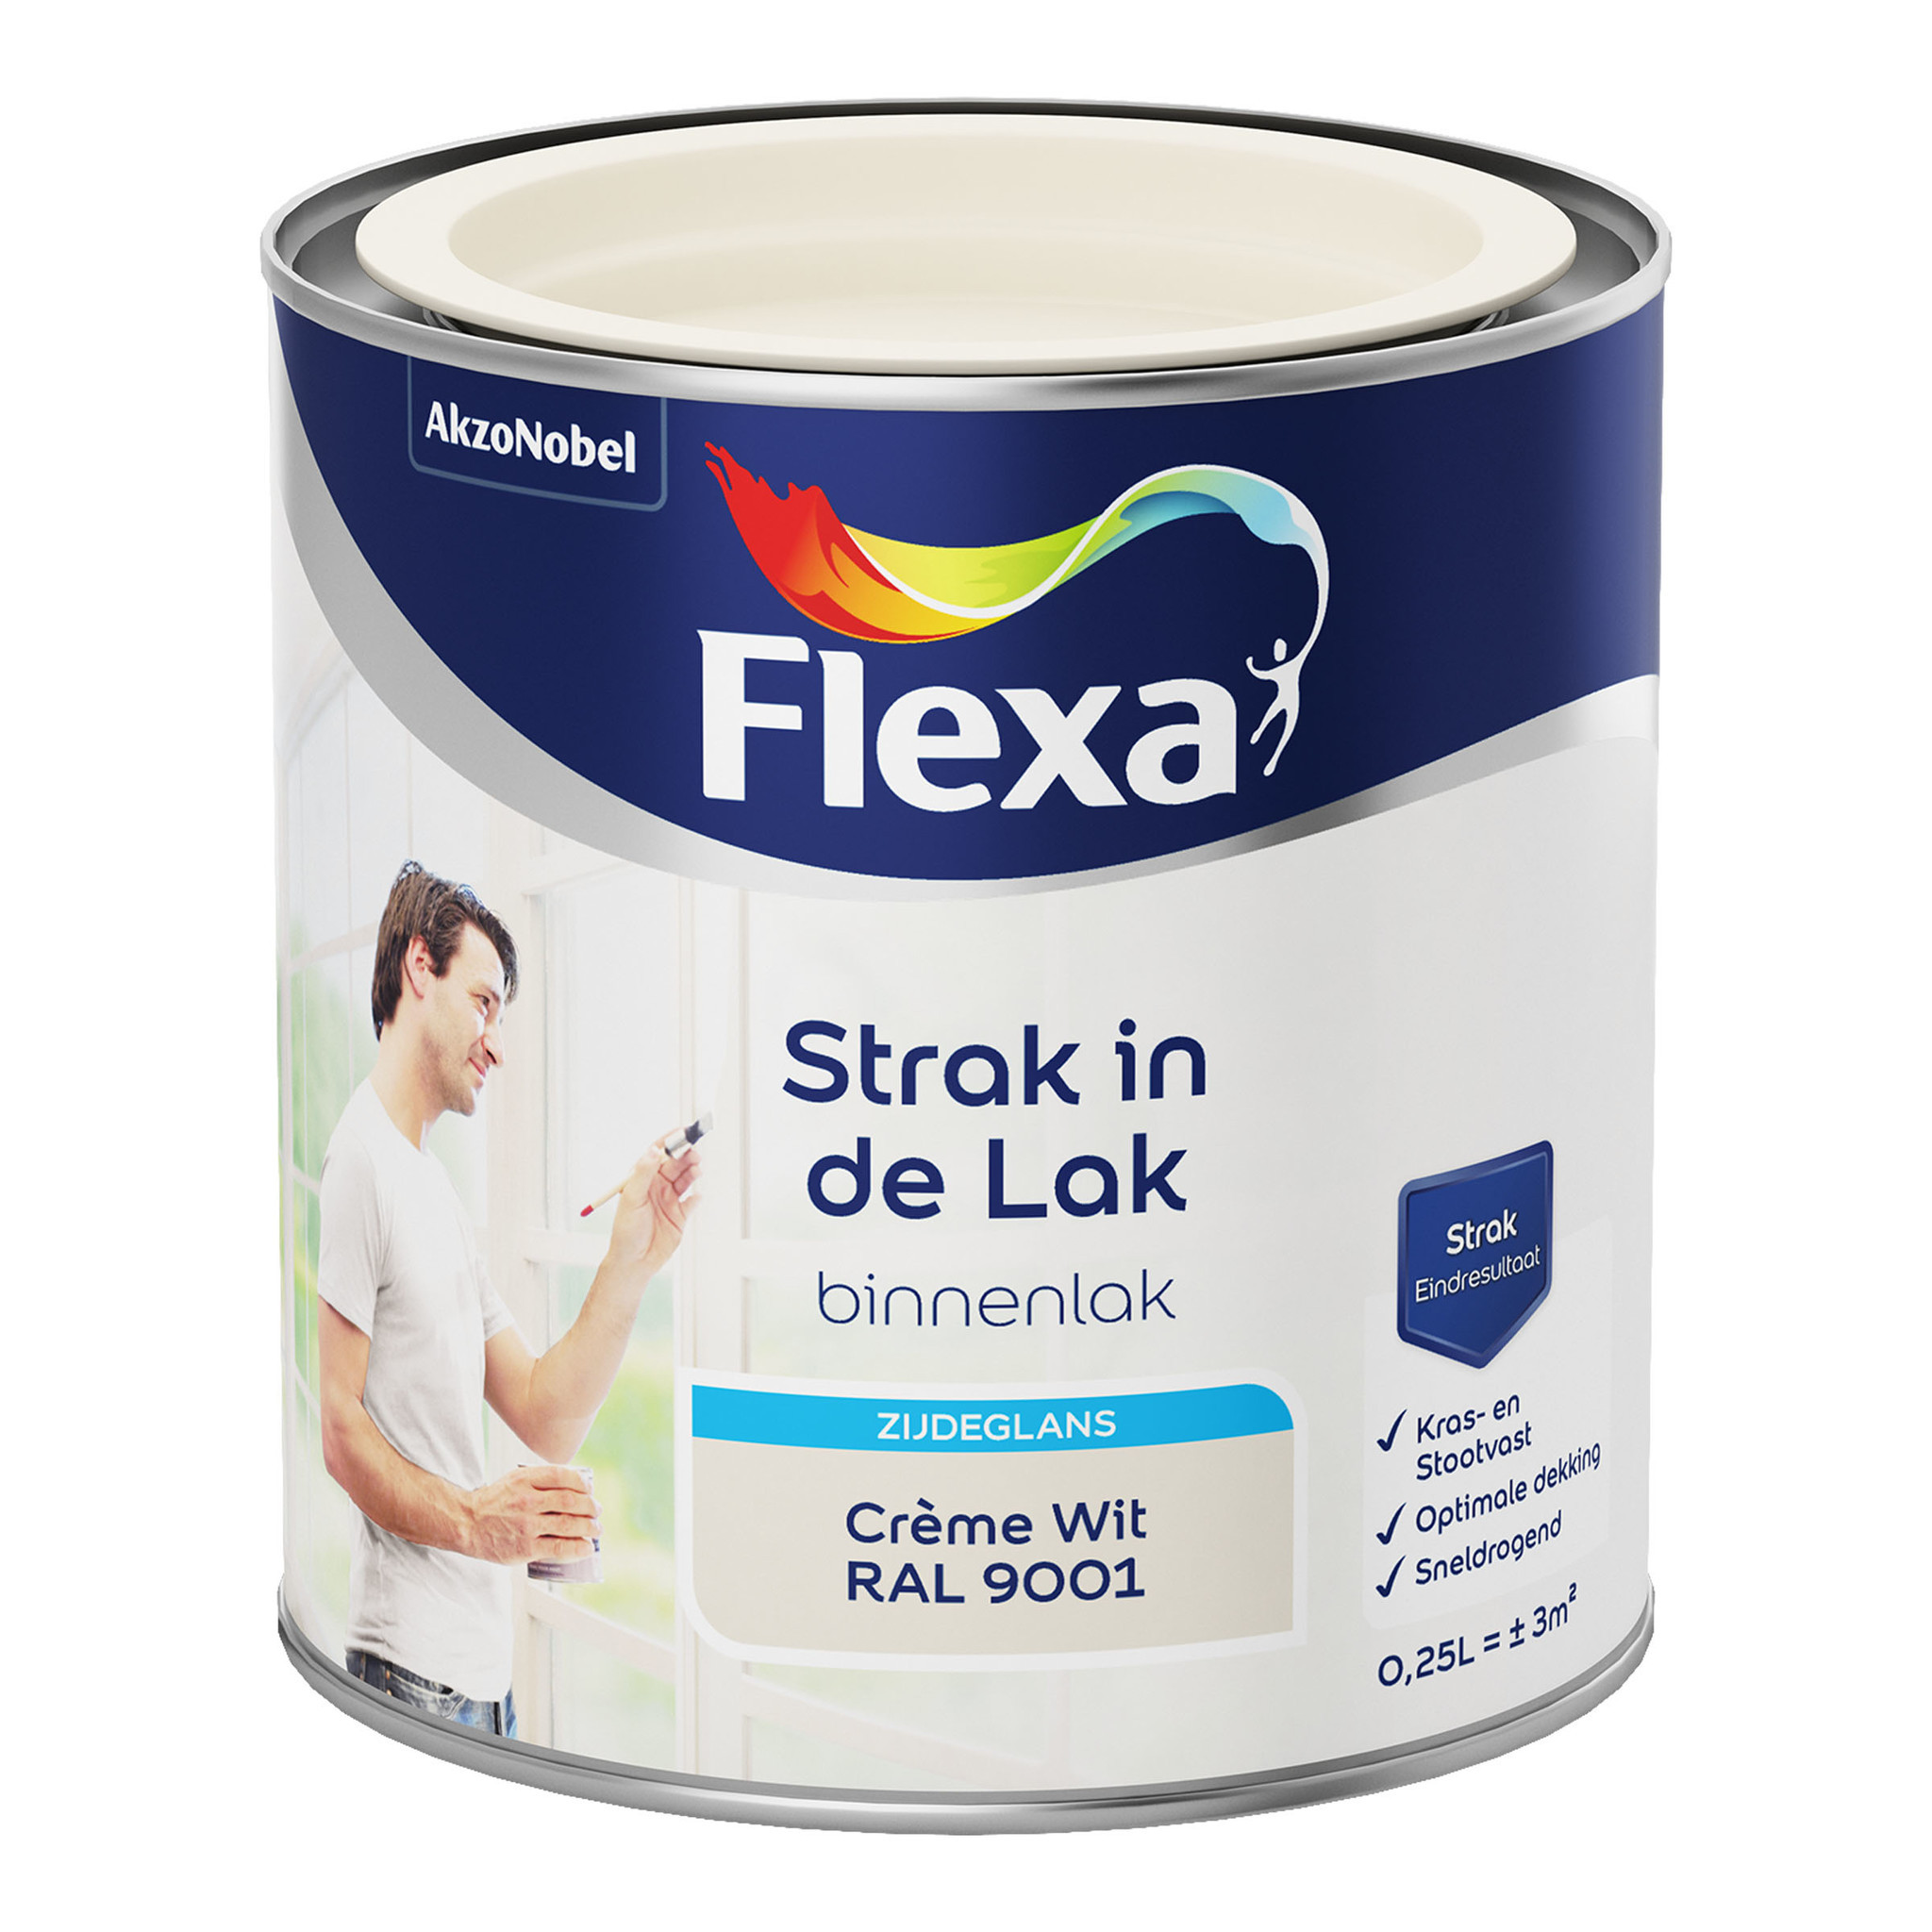 Flexa Strak in de Lak Binnenlak Zijdeglans - Crème Wit - RAL 9001